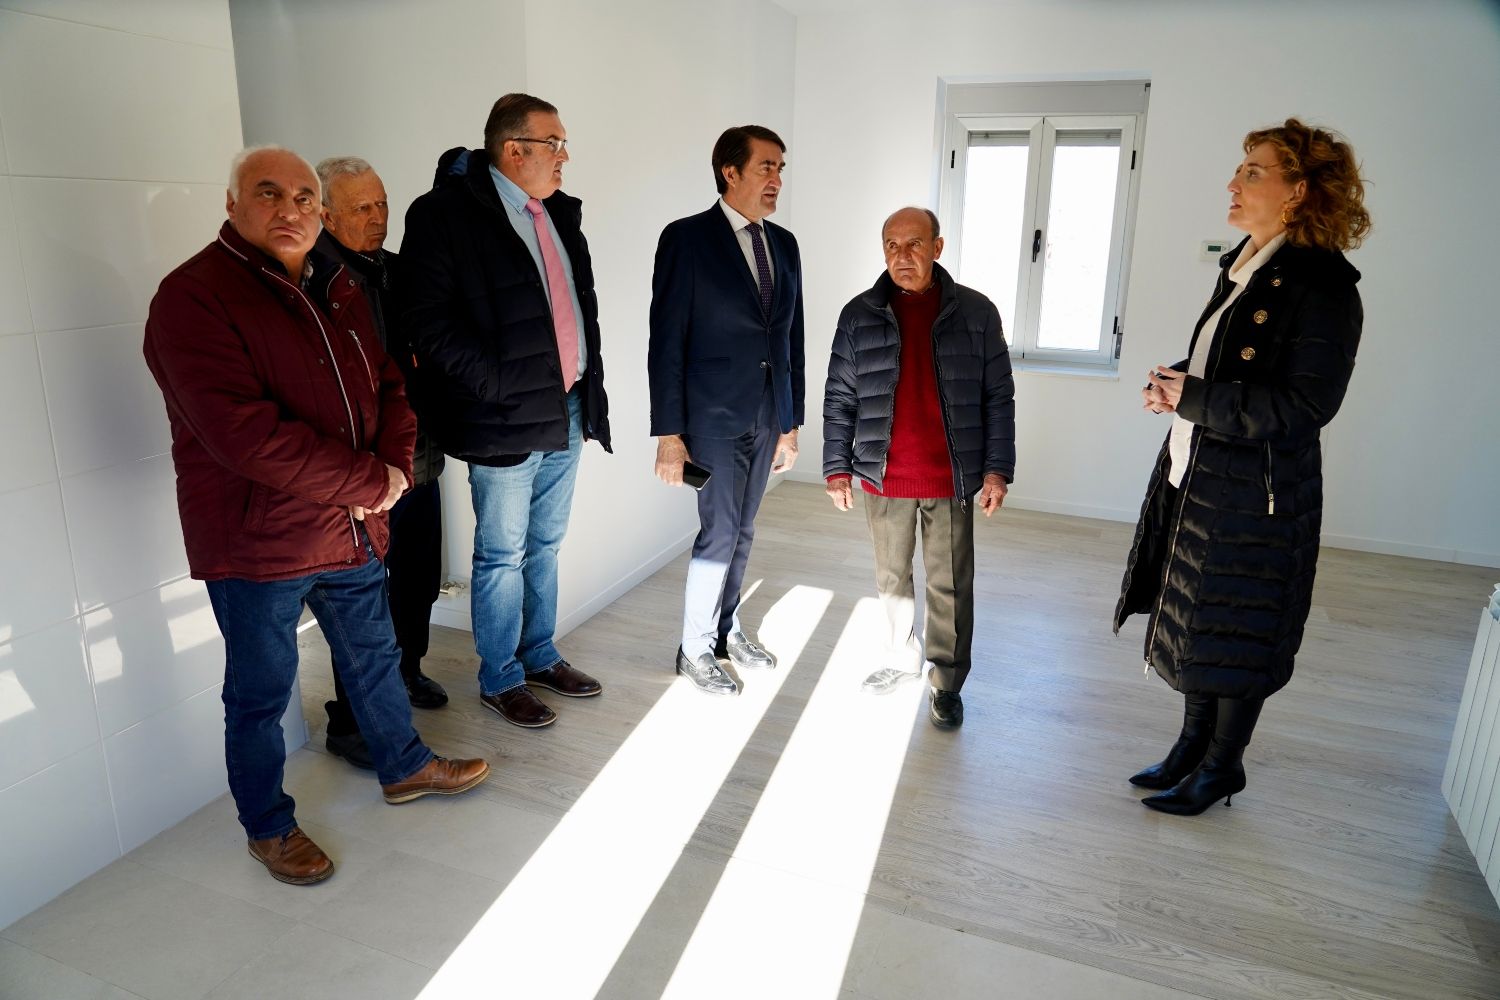 La Junta de Castilla y León incorporará 36 nuevas viviendas al programa ‘Rehabitare’ en León con una inversión de 2,8 millones